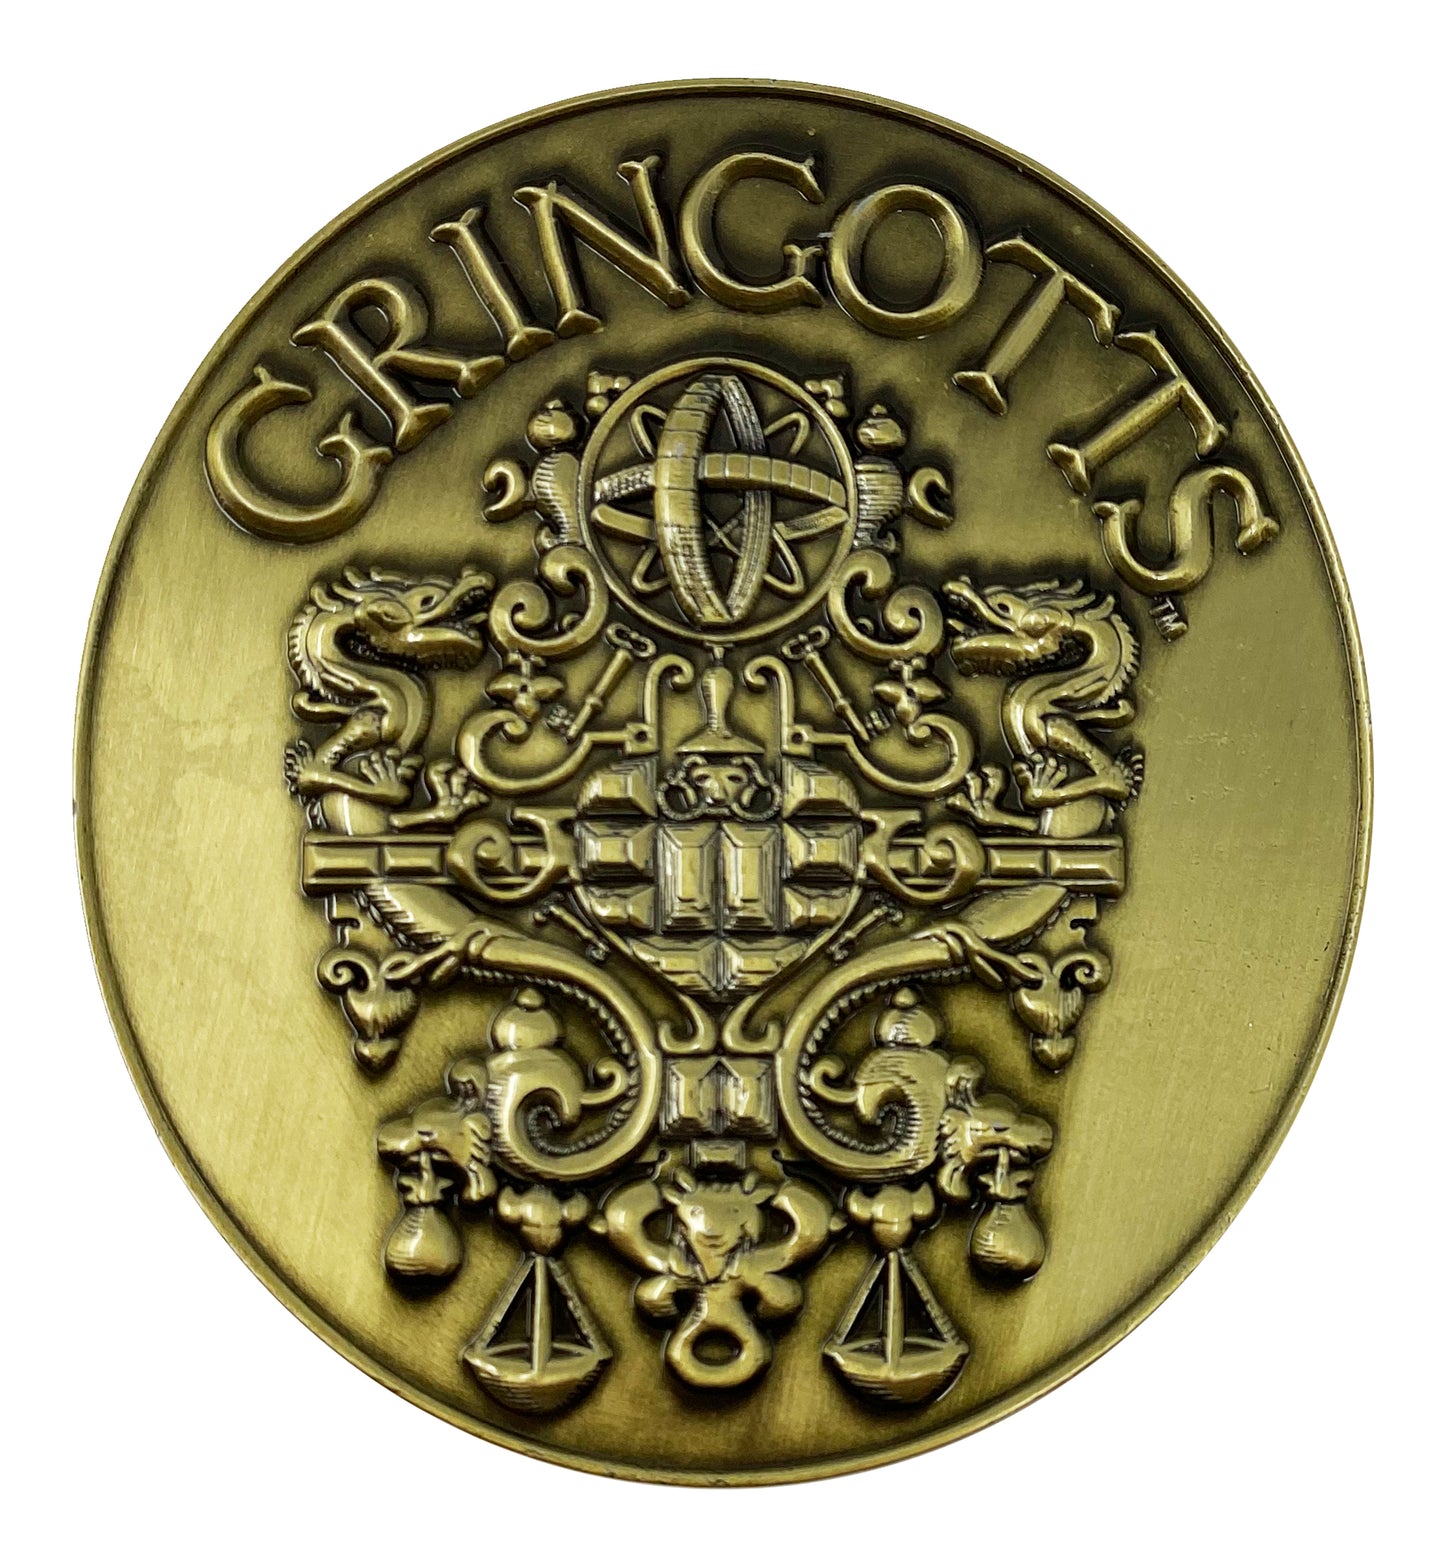 Harry Potter Limited Edition Gringotts Bank Medallion